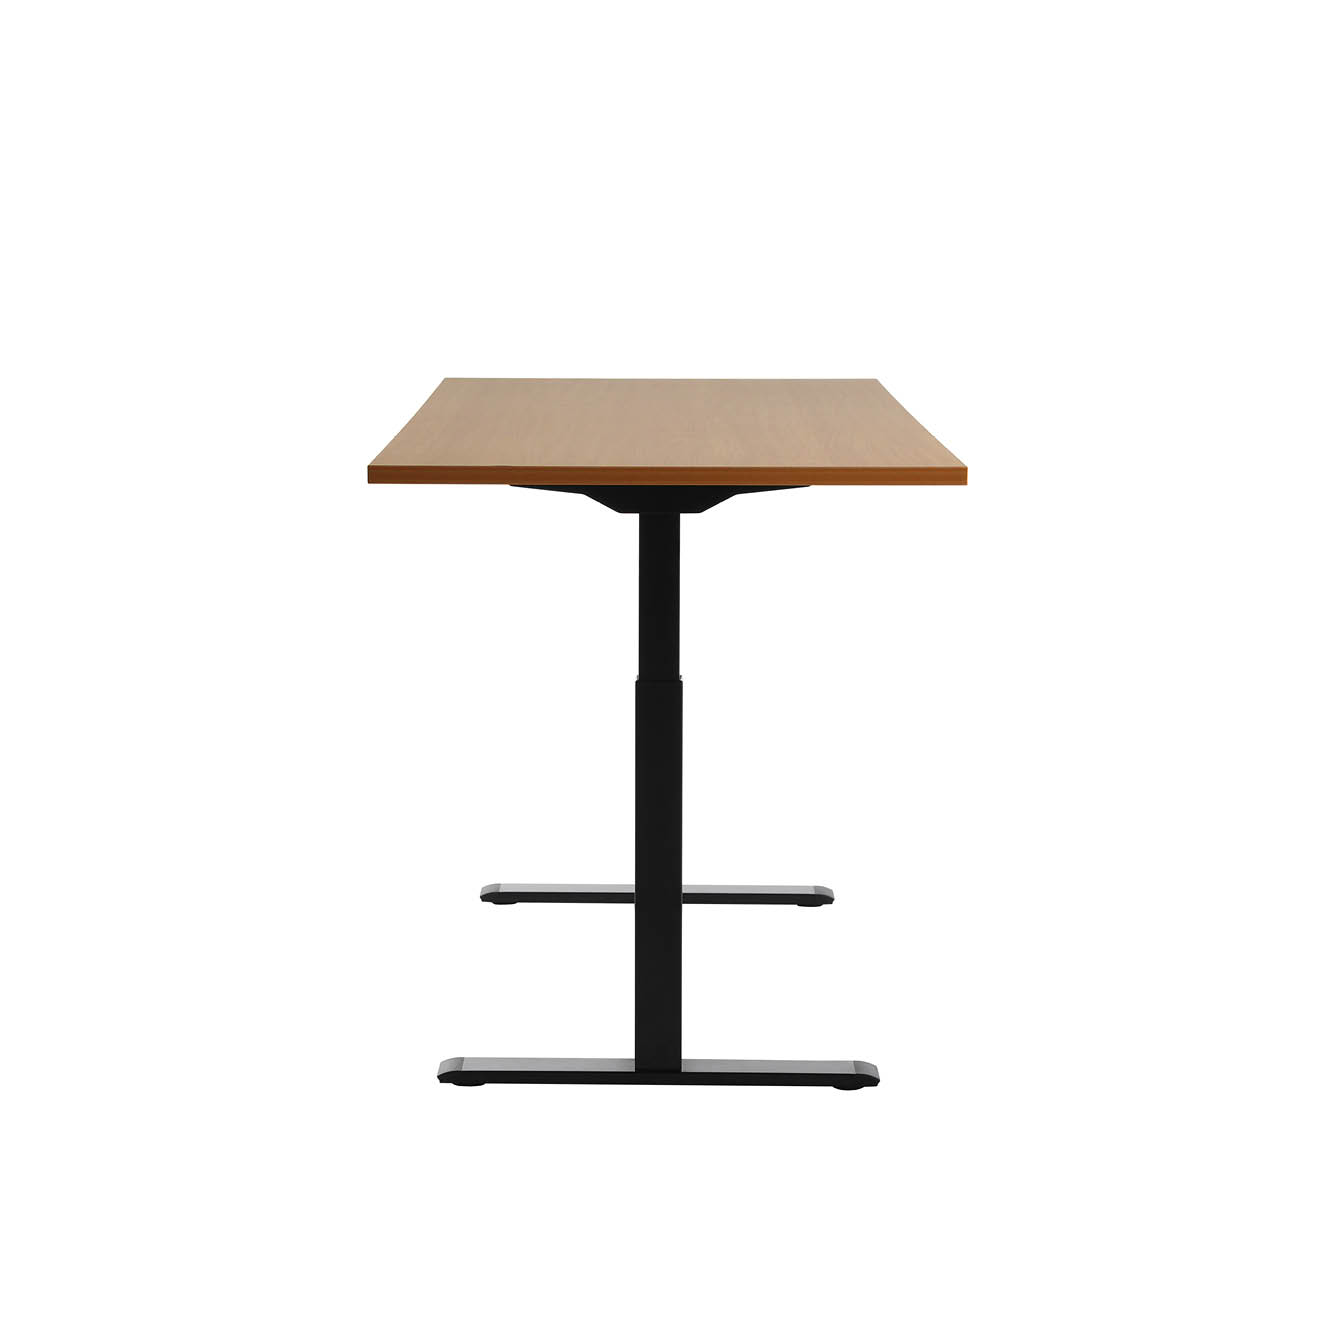 160 x 80 cm Schreibtisch Topstar Ergo E-Table höhenverstellbar - schwarz, Buche